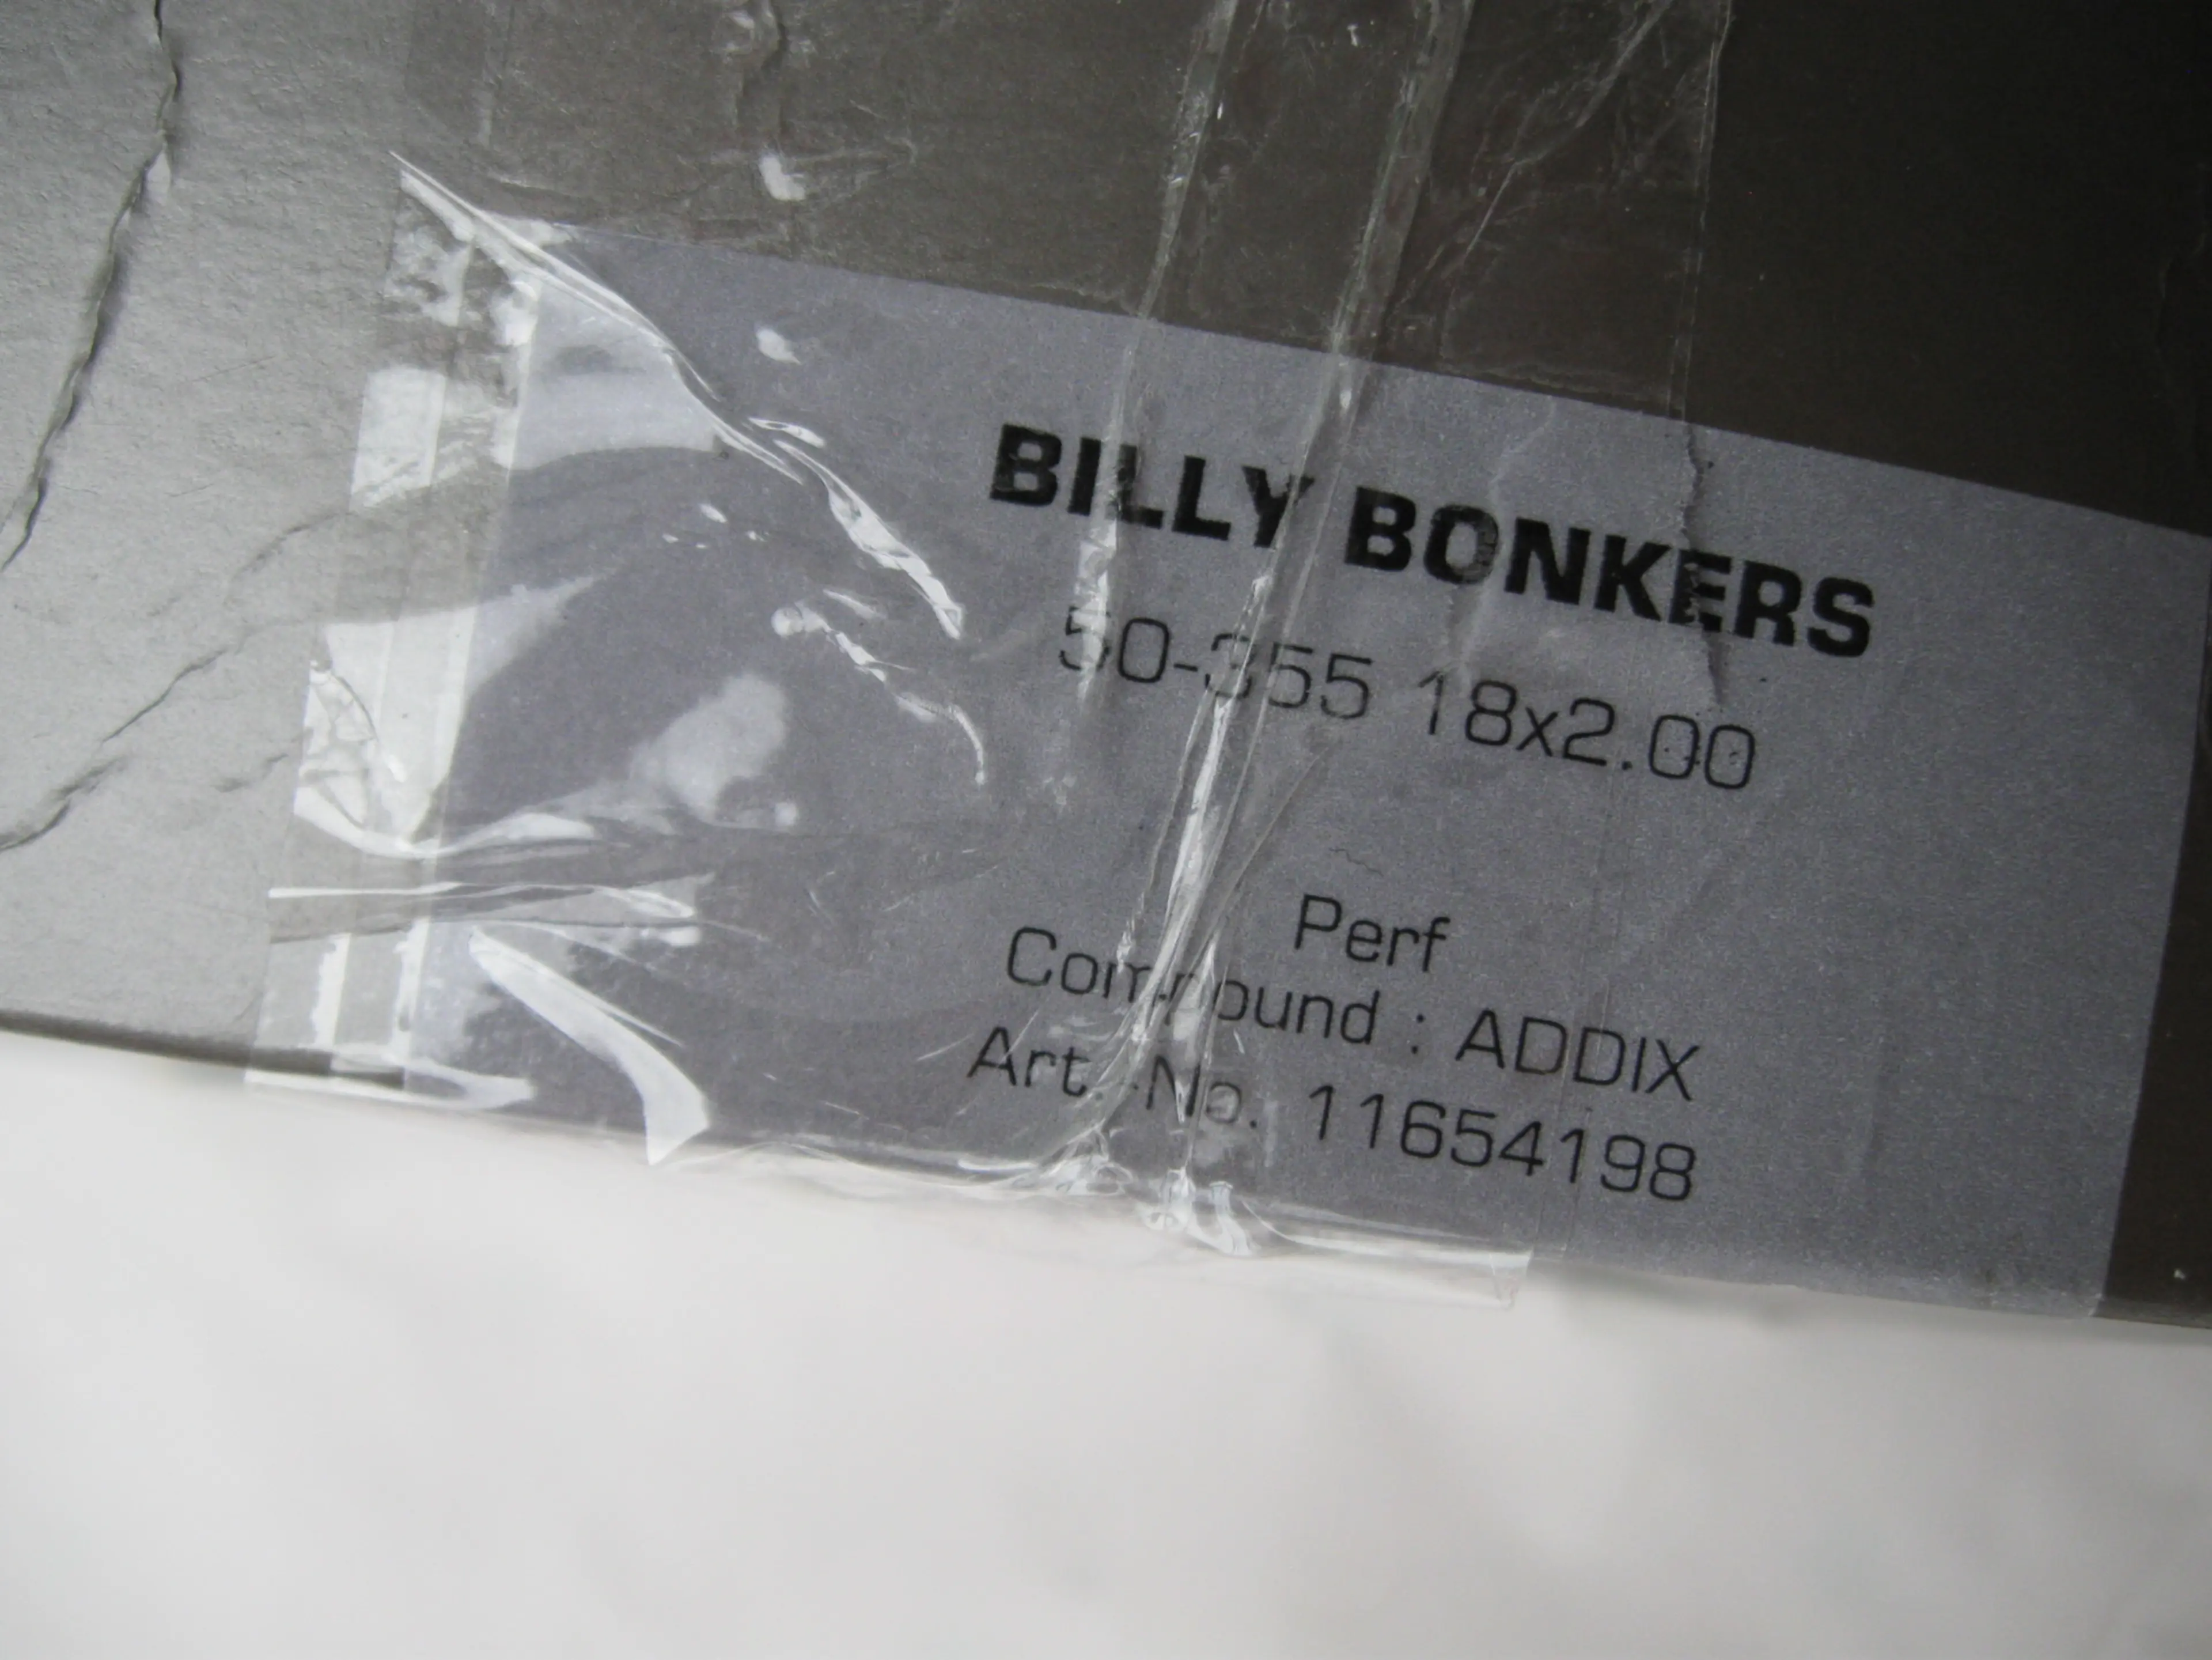 2. Anvelopa pliabila Schwalbe Billy Bonkers 18x2.0